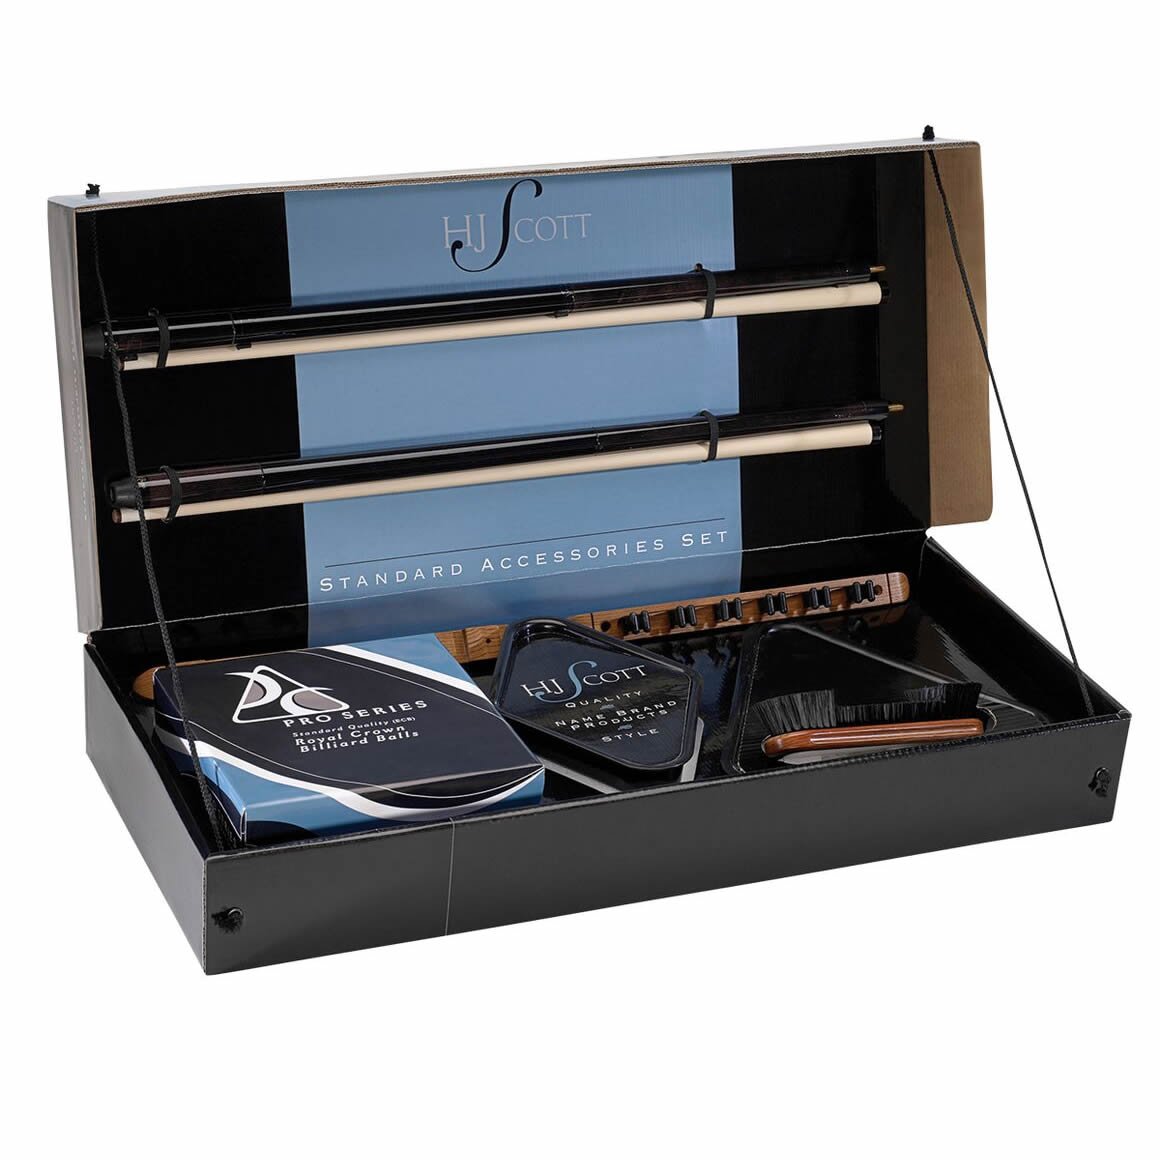 billiards accessories kit